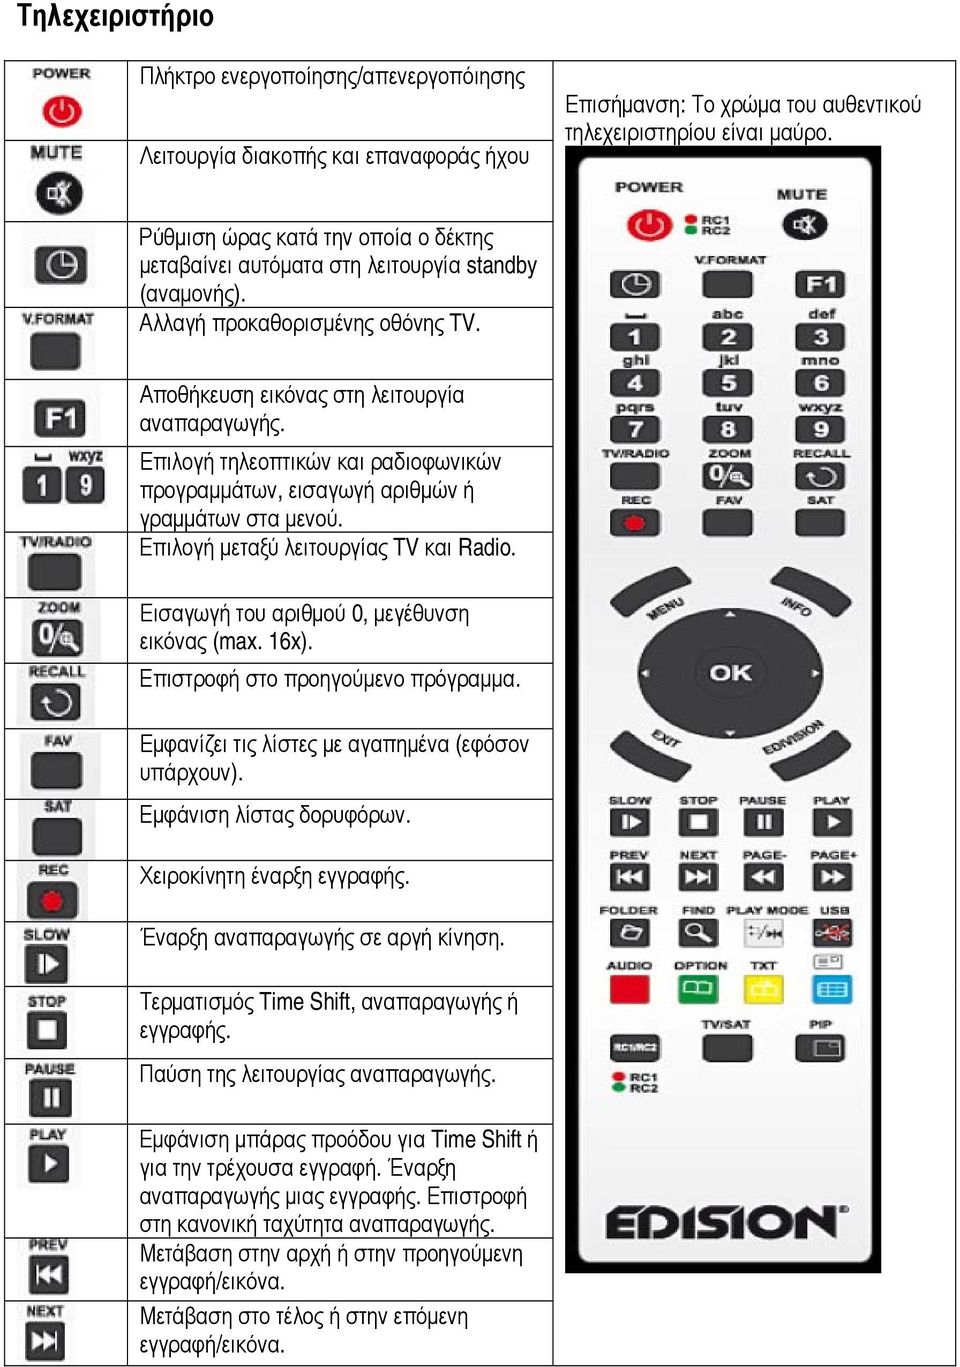 Επιλογή τηλεοπτικών και ραδιοφωνικών προγραμμάτων, εισαγωγή αριθμών ή γραμμάτων στα μενού. Επιλογή μεταξύ λειτουργίας TV και Radio. Εισαγωγή του αριθμού 0, μεγέθυνση εικόνας (max. 16x).